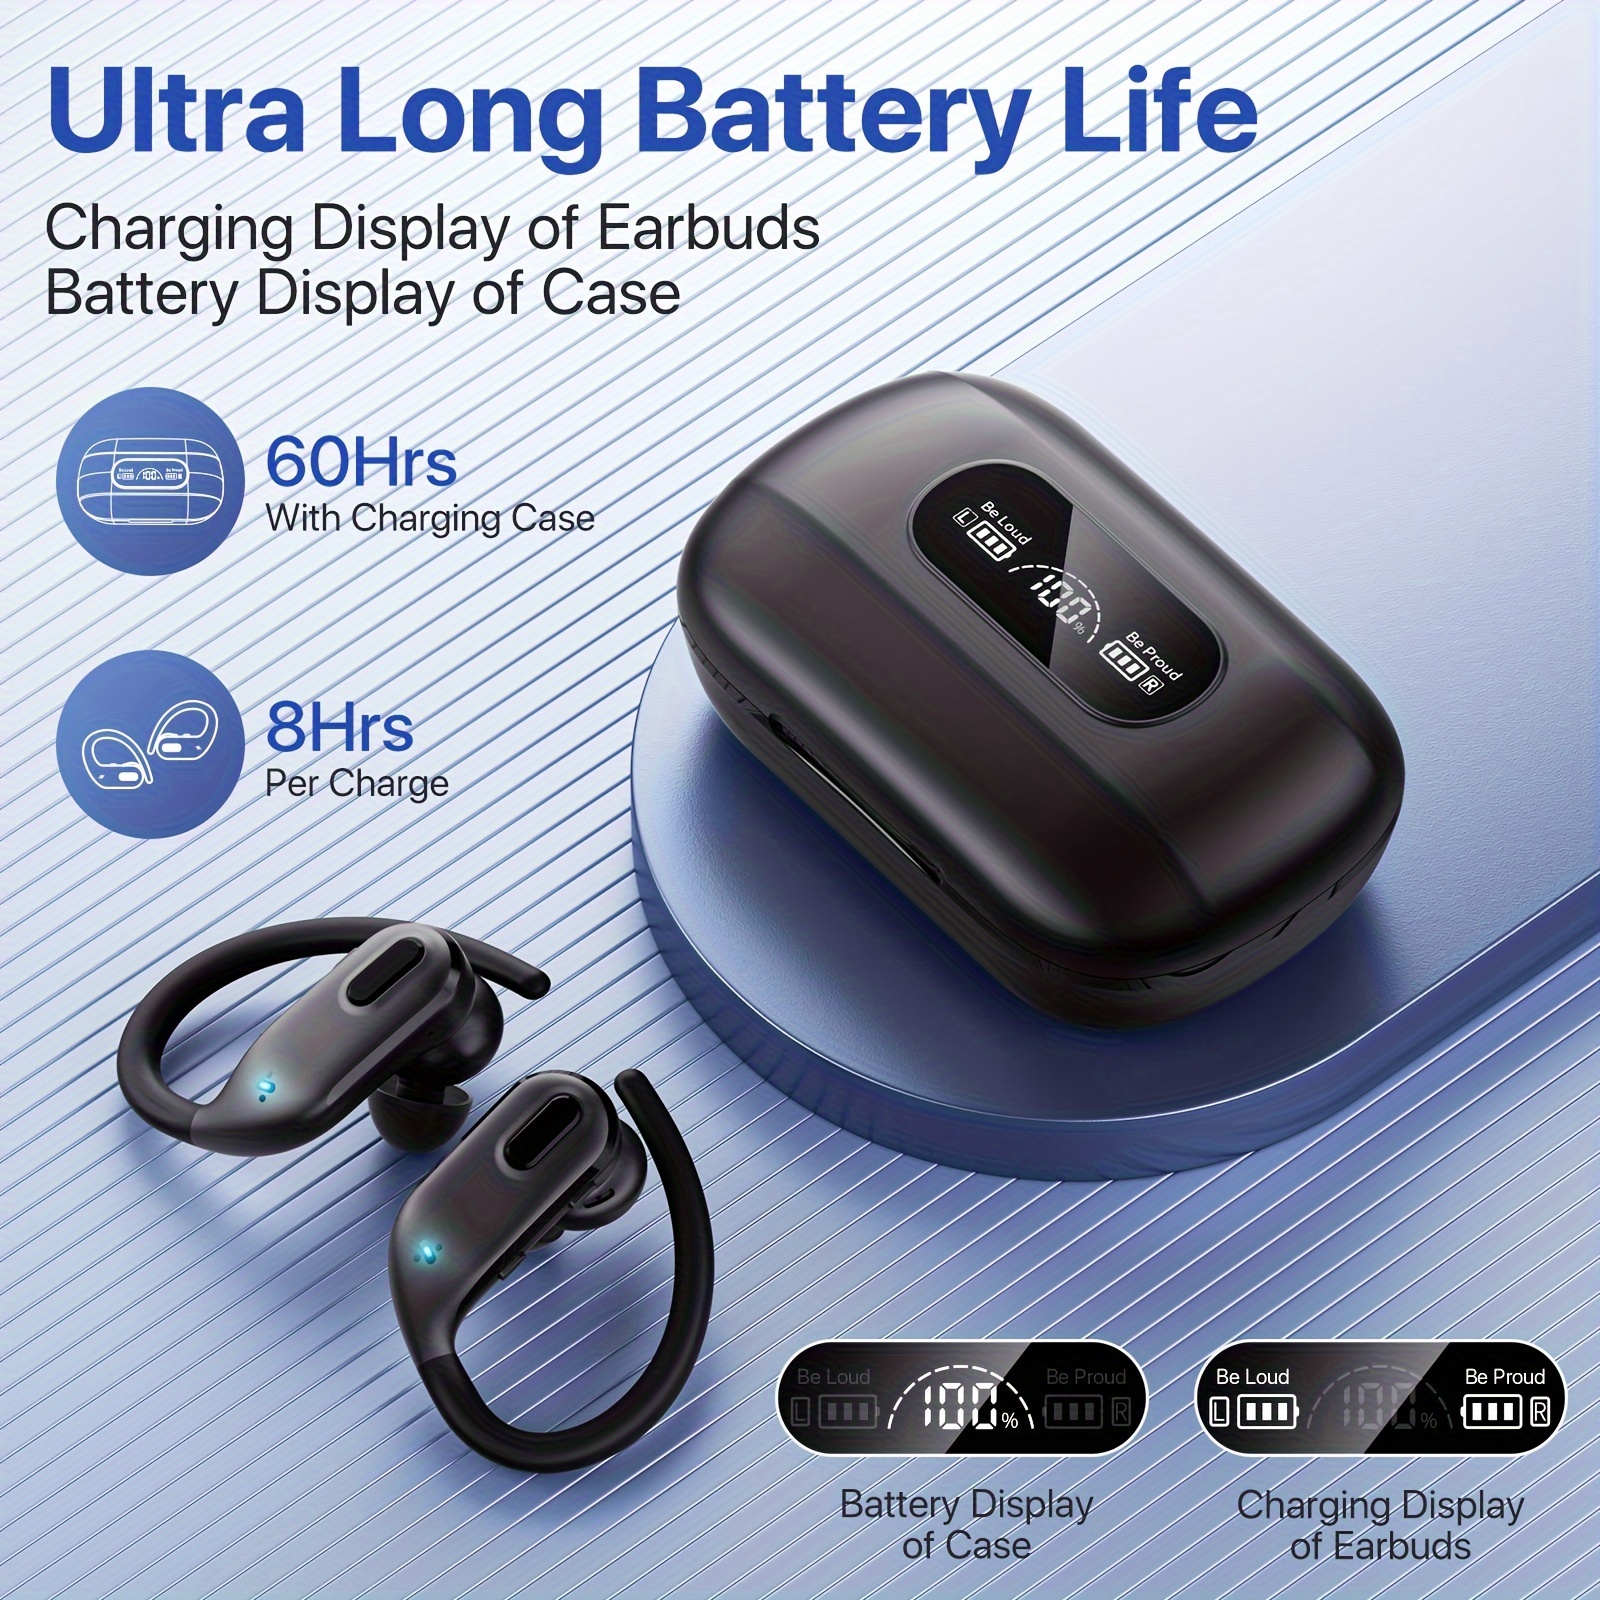 Auriculares Inalambricos Bluetooth, Mini Auriculares Bluetooth 5.3 con HD  Micrófono, 40H Cascos Inalambricos Bluetooth con Sonido Potente y Claro,  Audifonos con Pantalla LED, IP7 Impermeable, Negro : : Electrónica